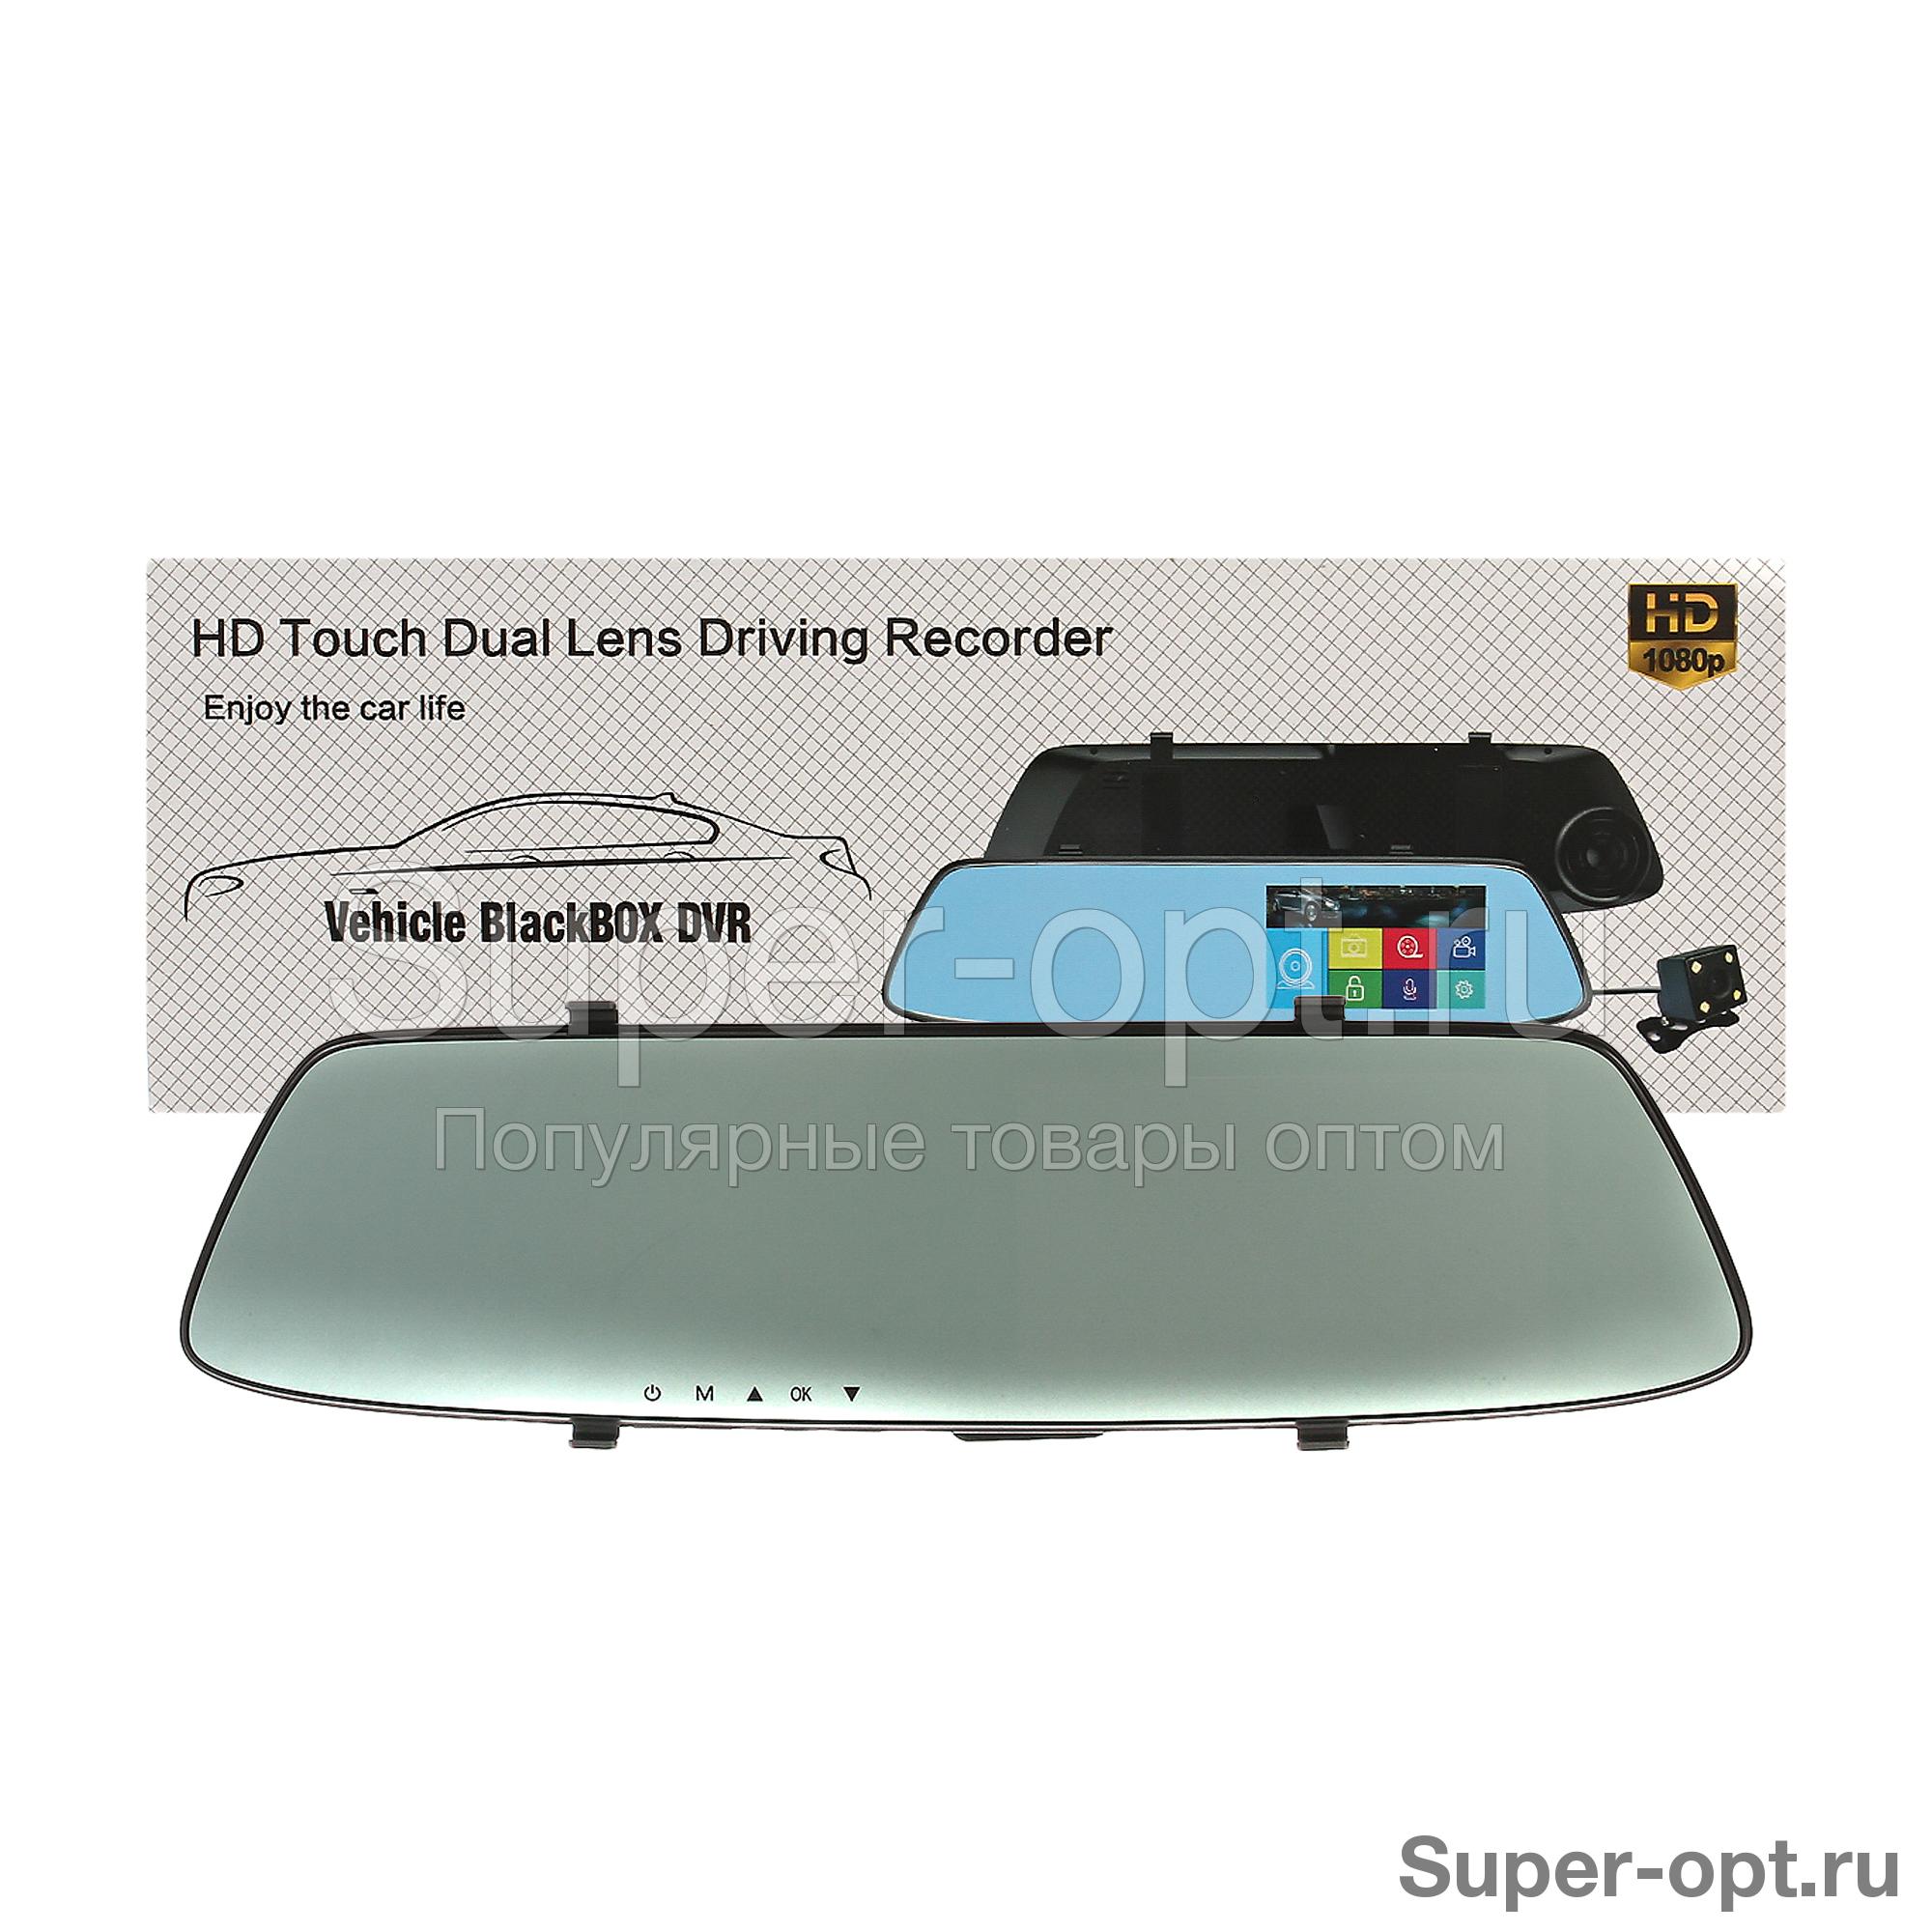 Видеорегистратор hd touch dual lens driving recorder инструкция